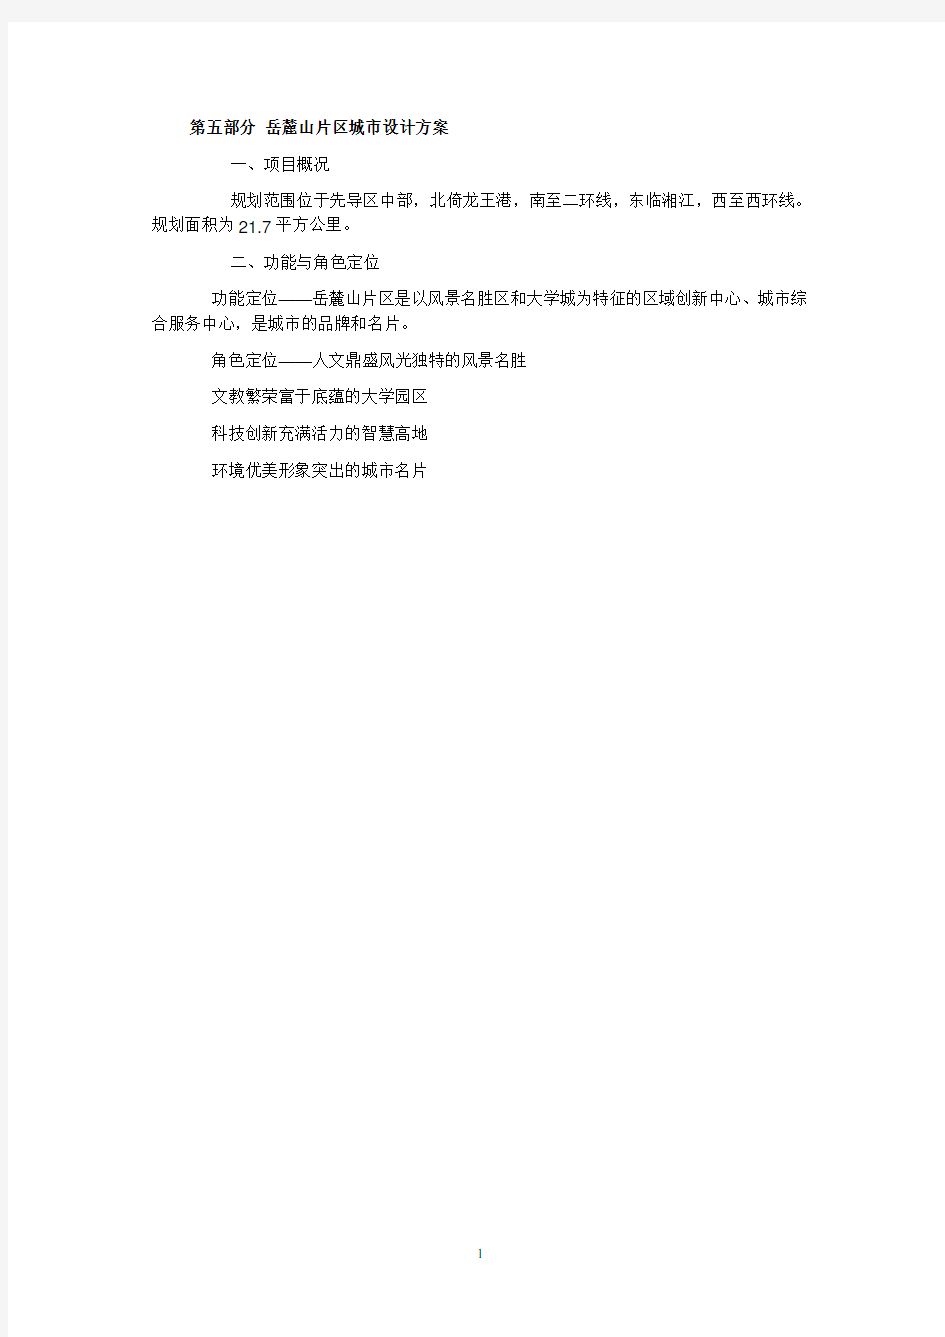 长沙岳麓区整体规划(2020年整理).pdf